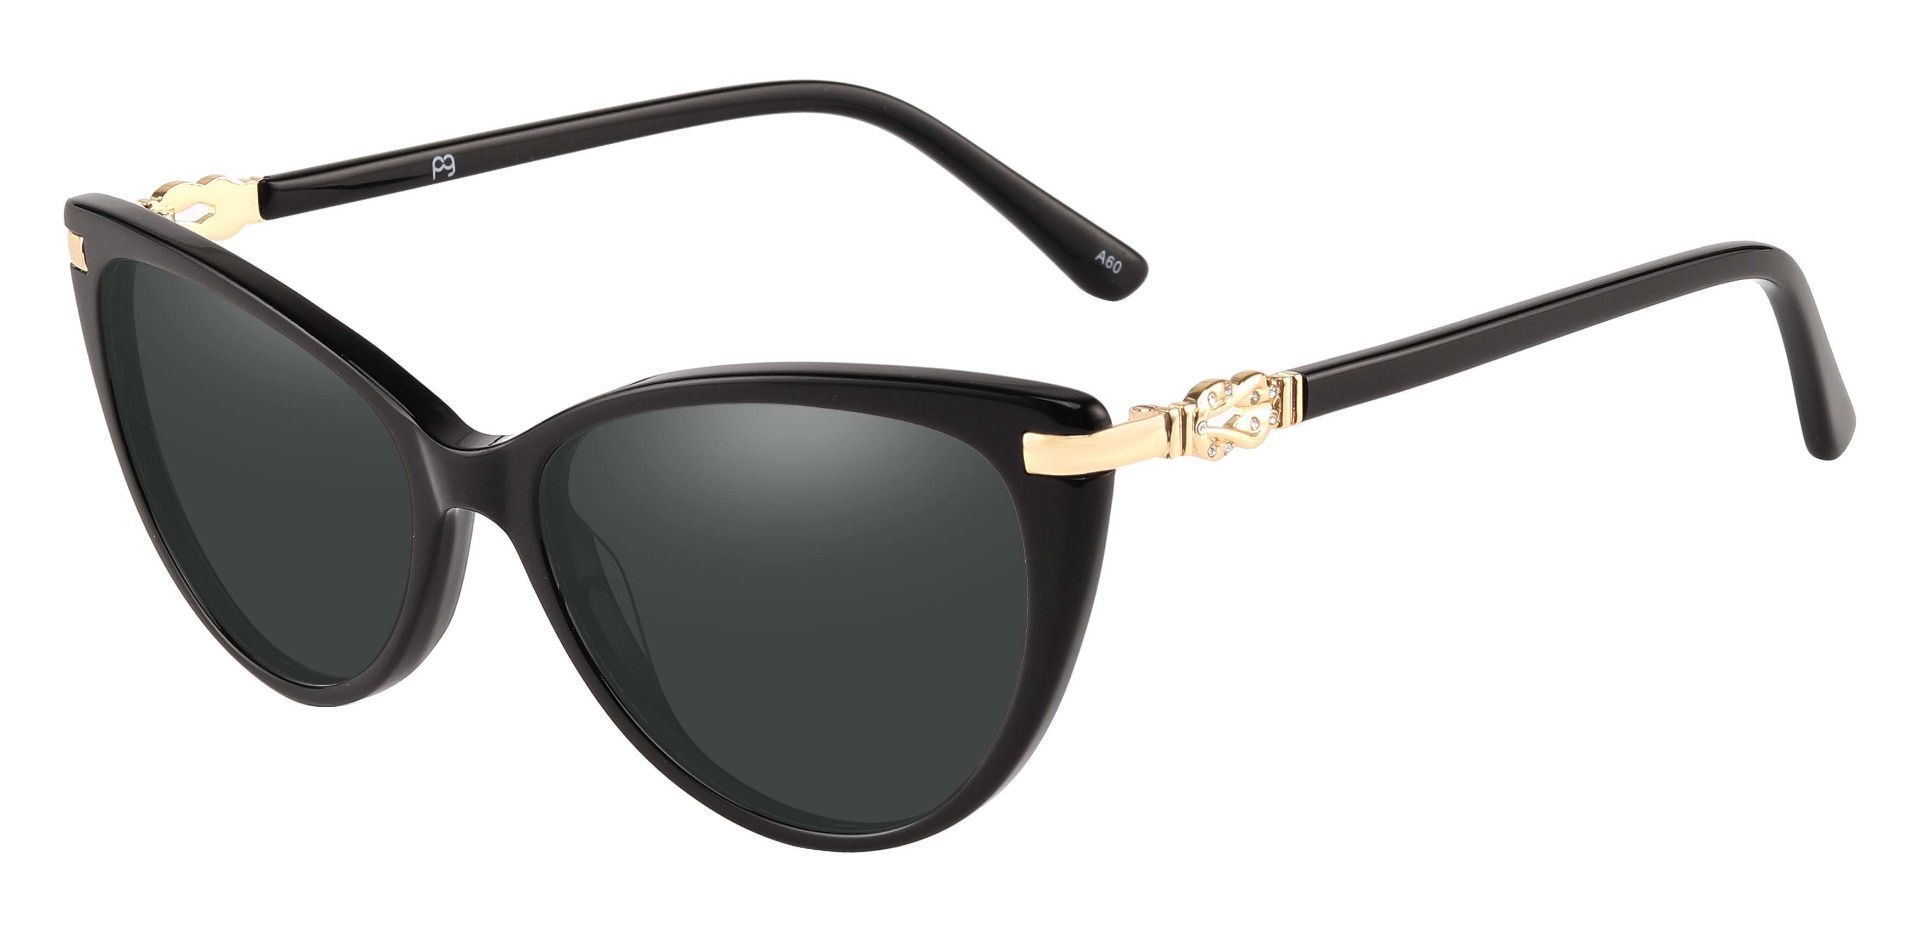 Starla Cat Eye Progressive Sunglasses - Black Frame With Gray Lenses